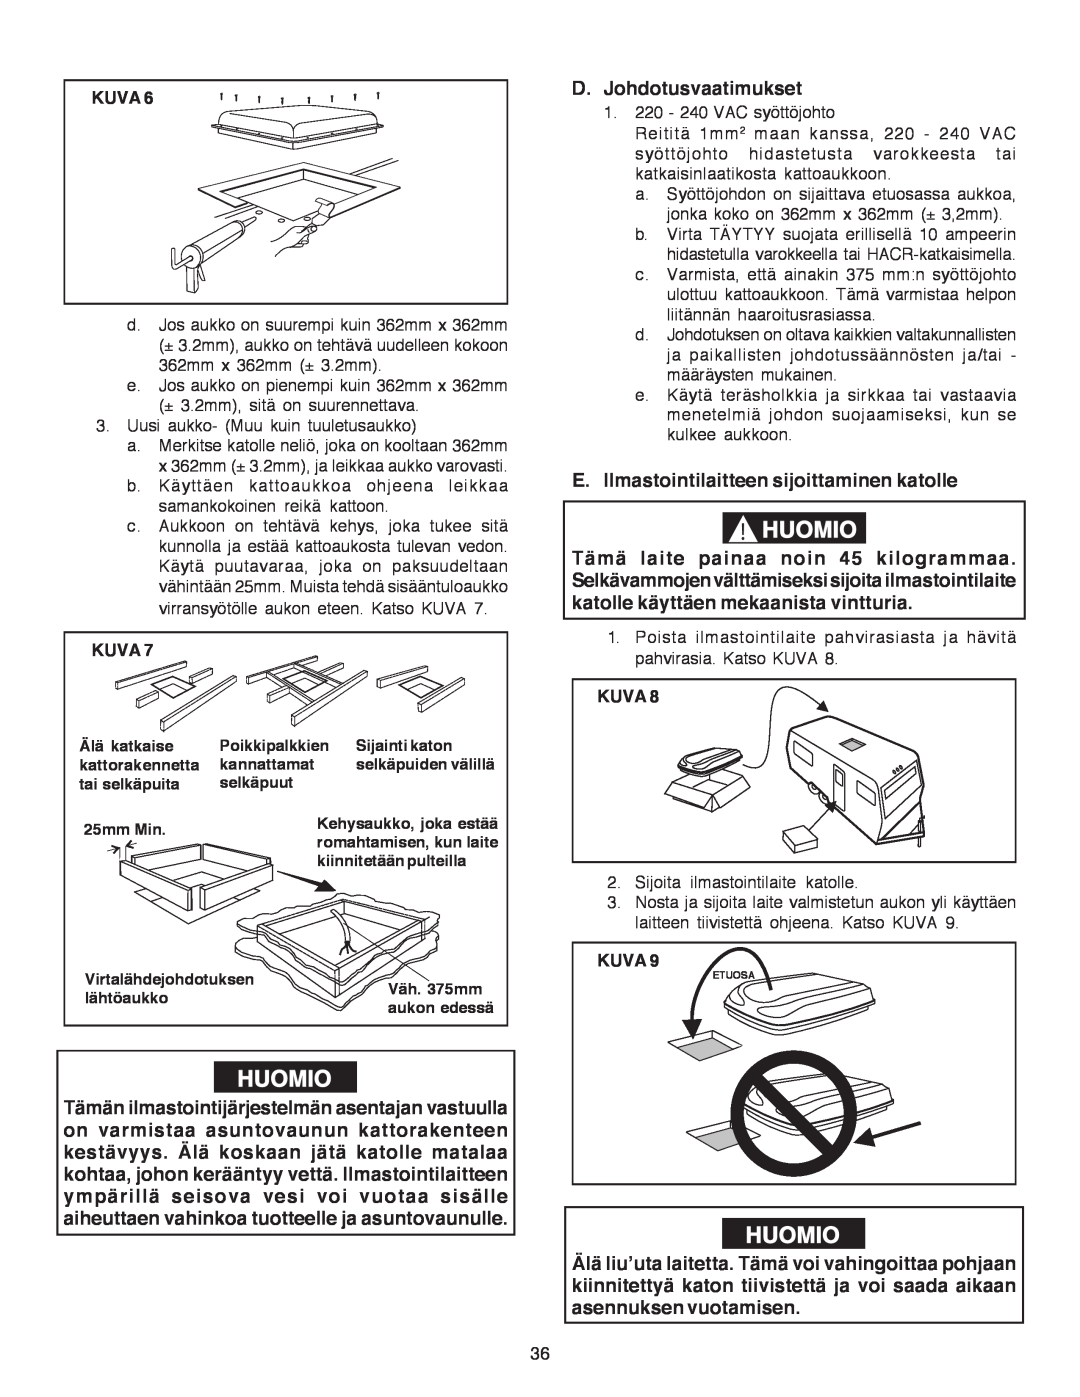 Dometic B3200 manual Huomio, D.Johdotusvaatimukset, E.Ilmastointilaitteen sijoittaminen katolle, Kuva 